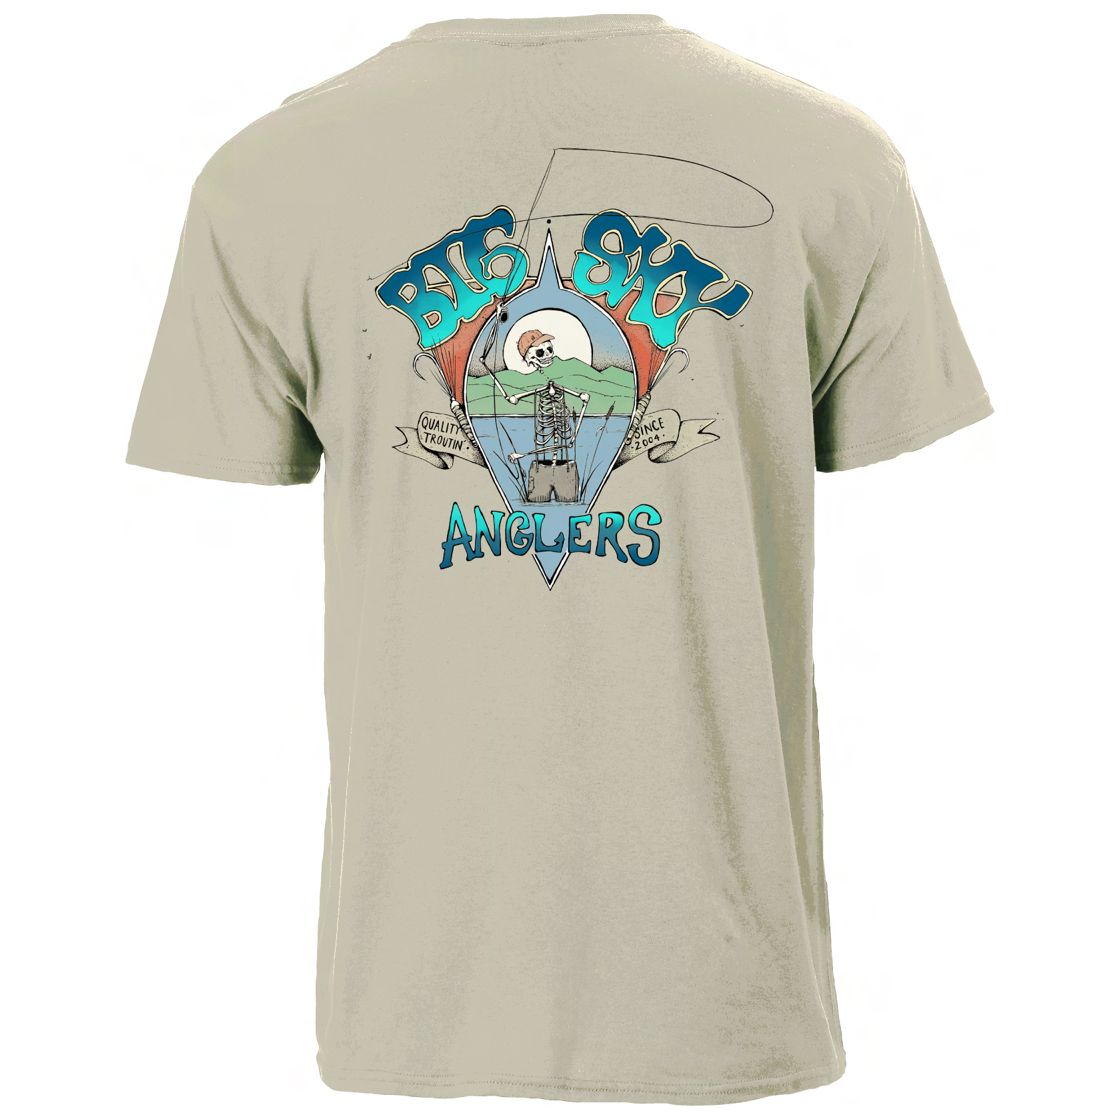 Big Sky Anglers Dead Angler T-Shirt Sand Image 01